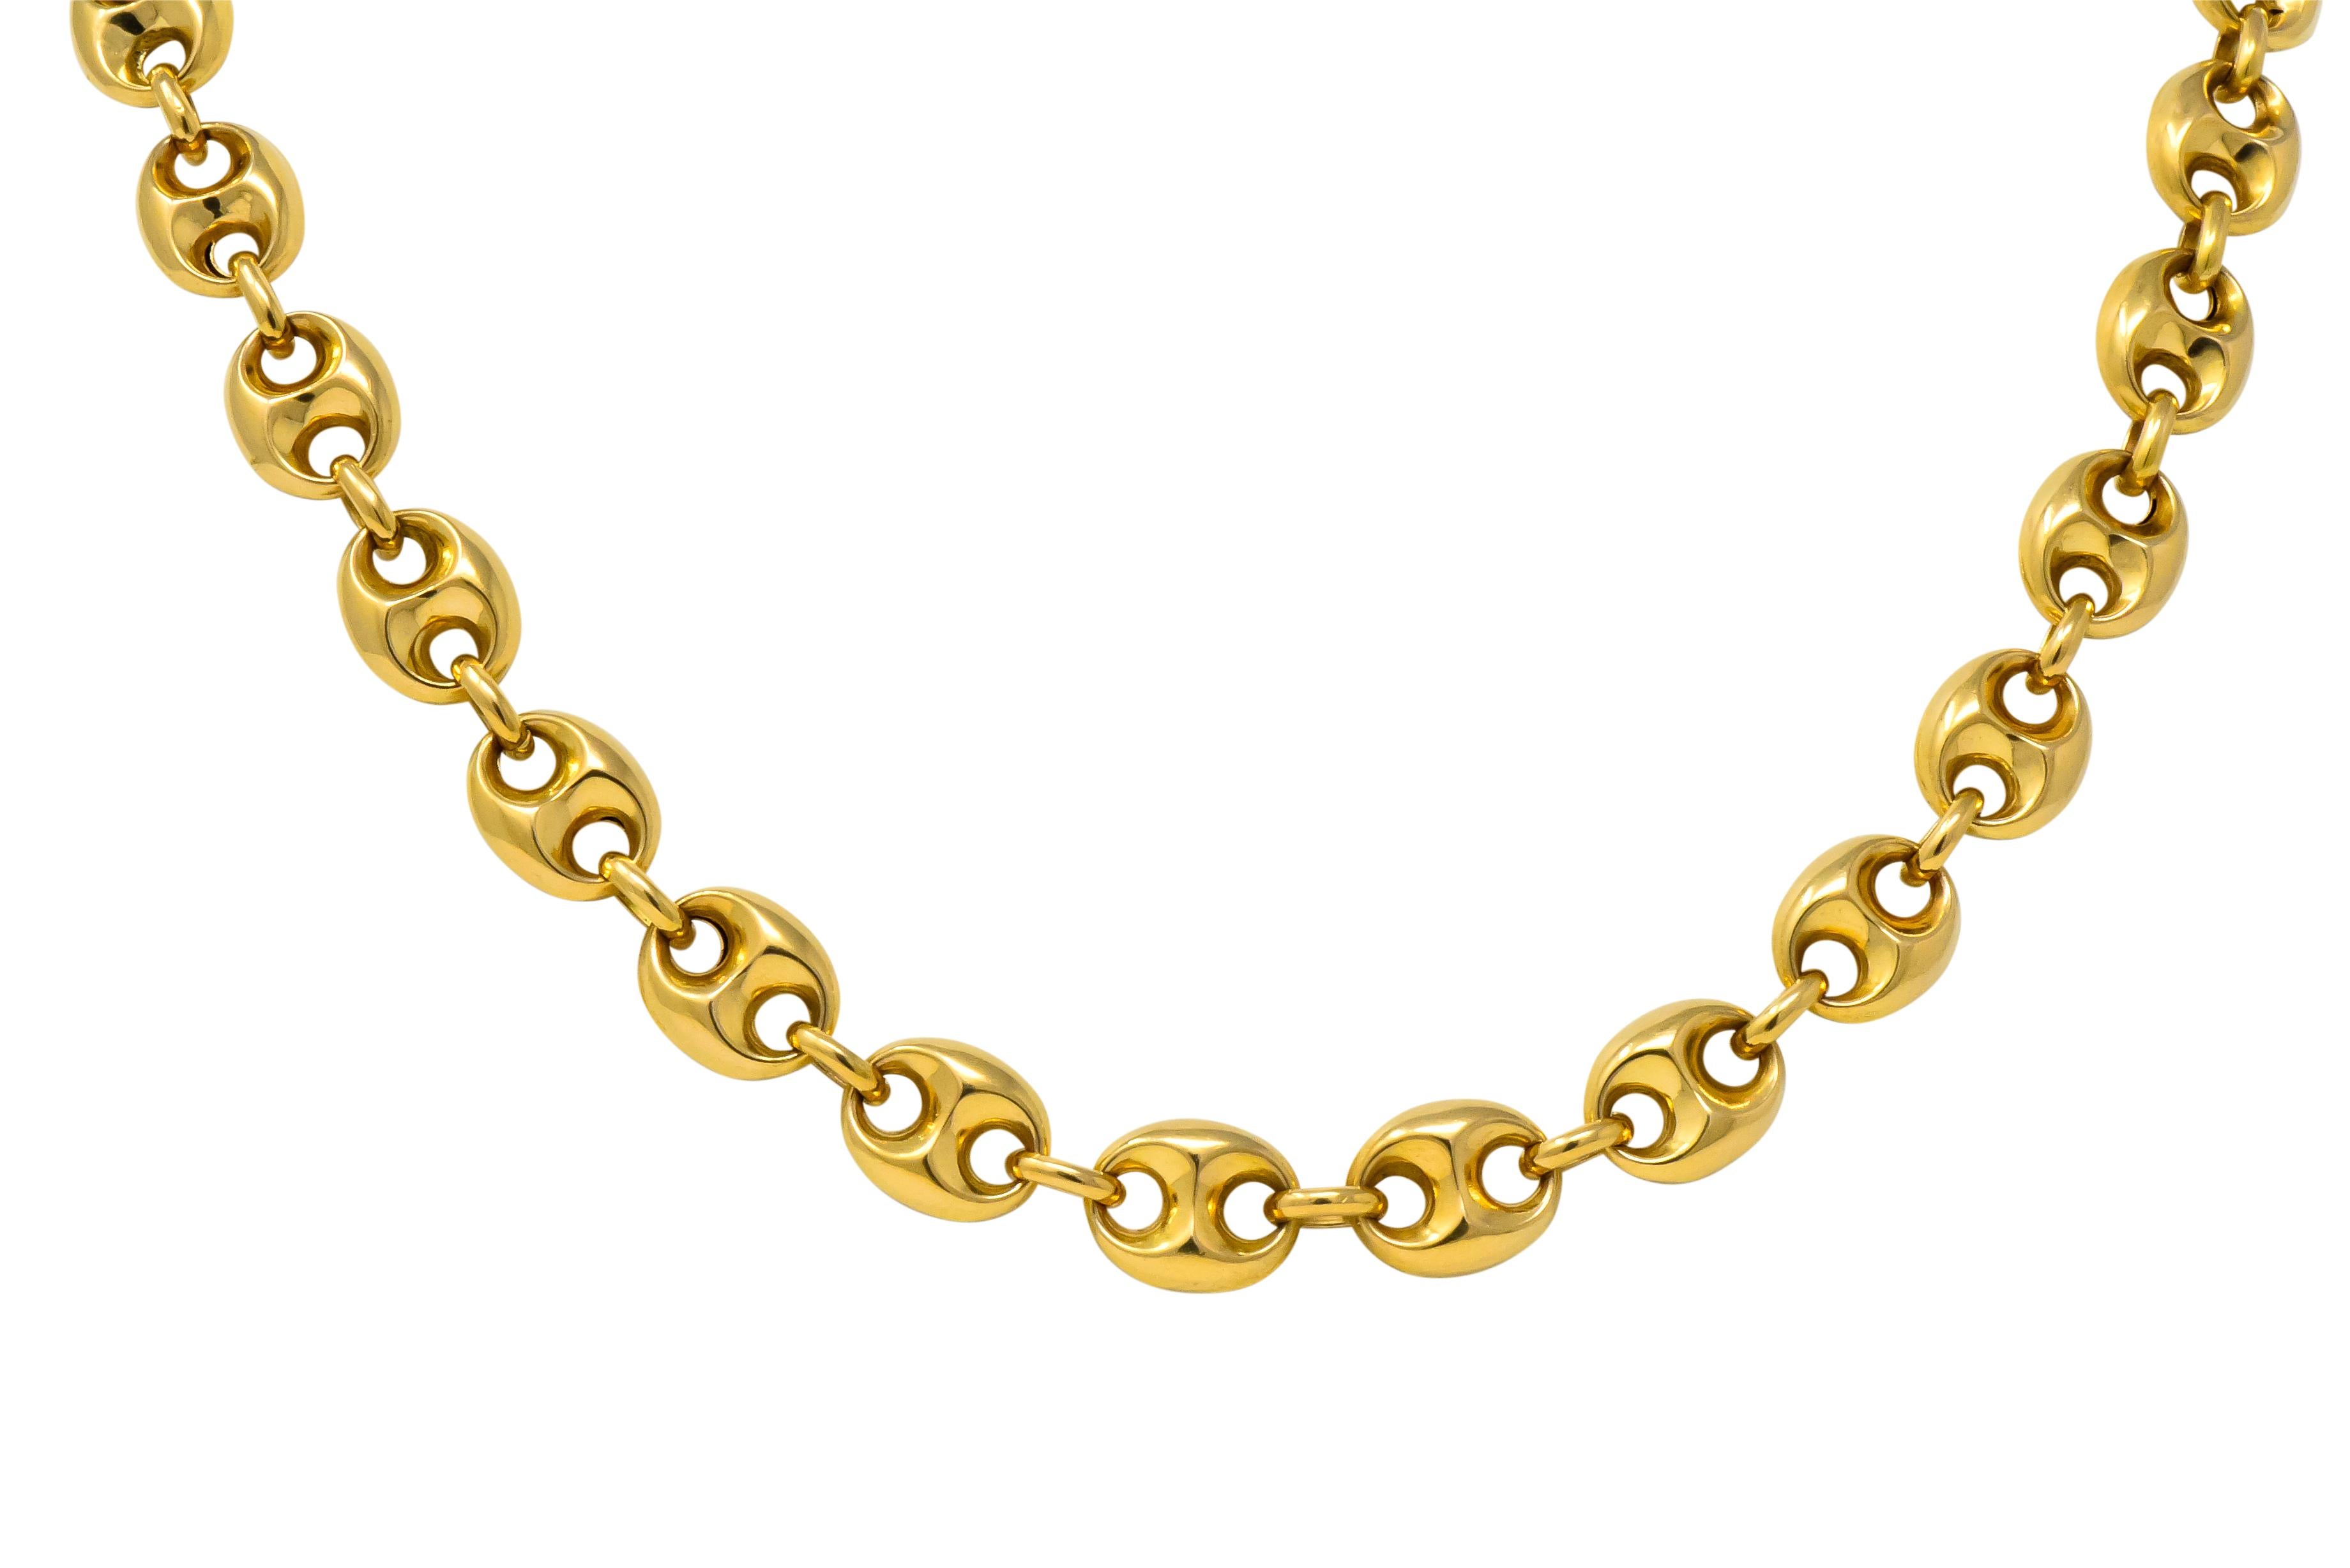 25 karat gold chain